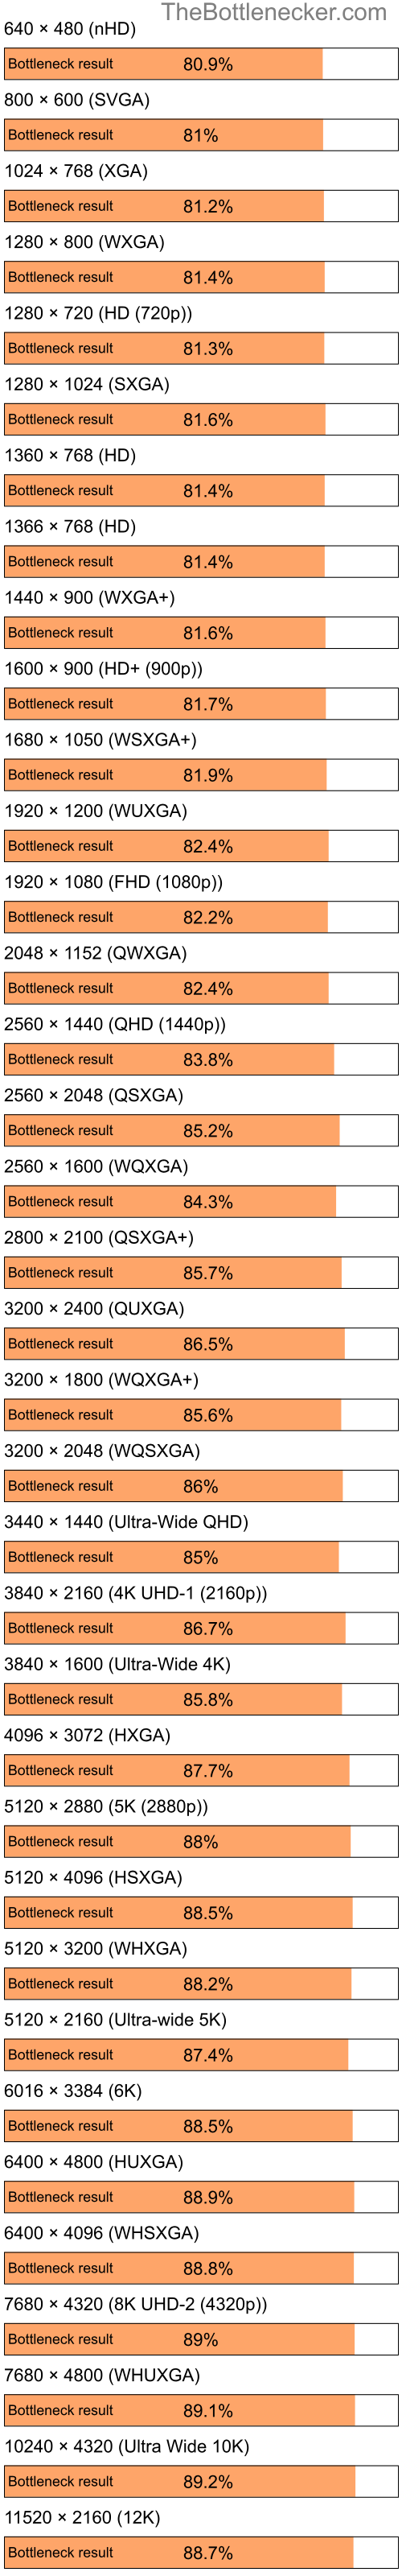 Bottleneck results by resolution for Intel Celeron and NVIDIA nForce 630M in General Tasks